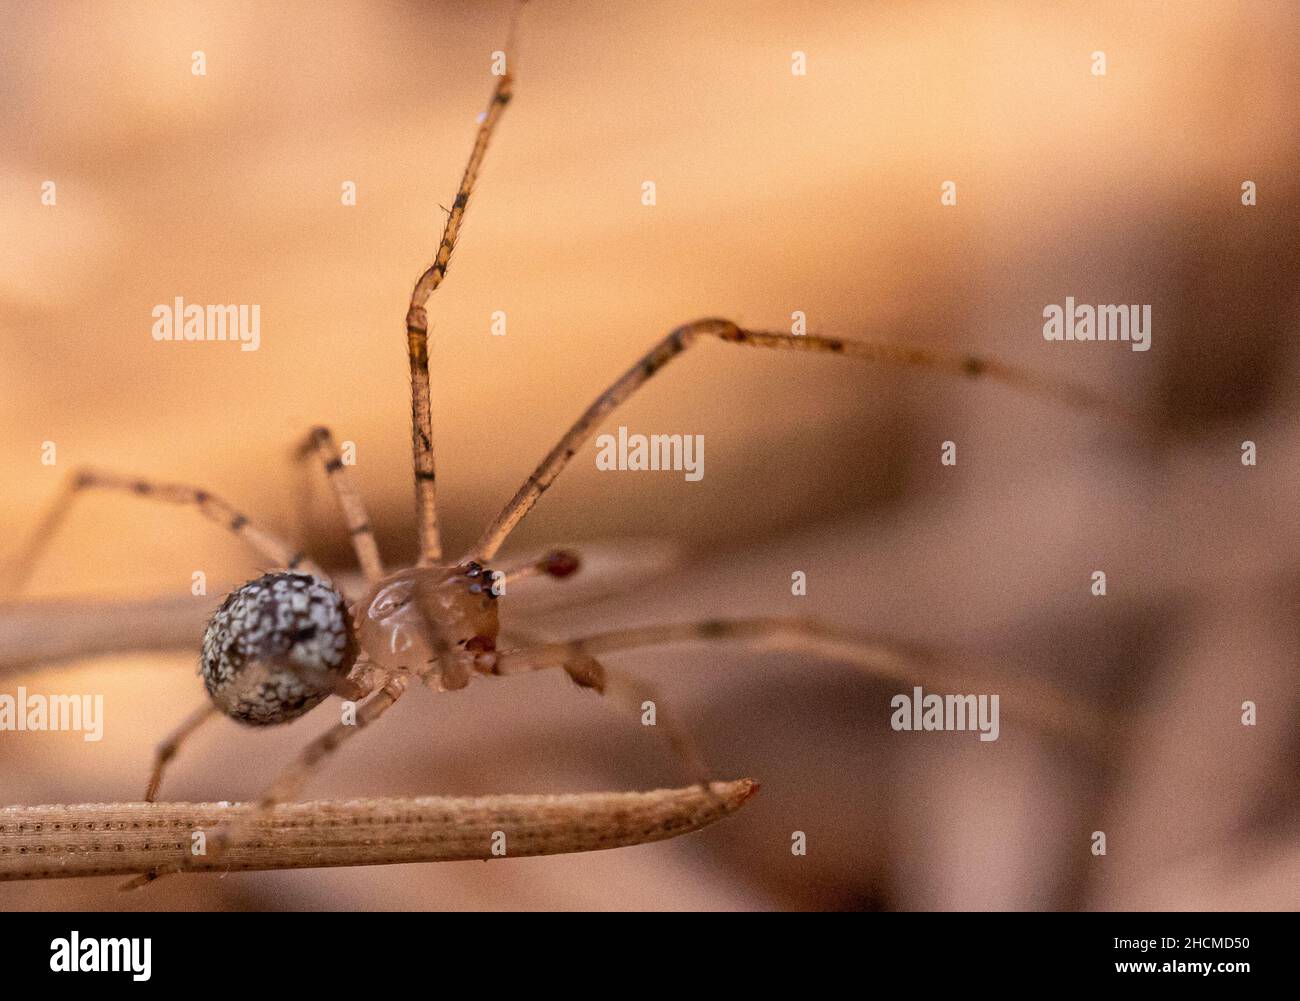 Disparo de enfoque selectivo de una araña de mechero Foto de stock